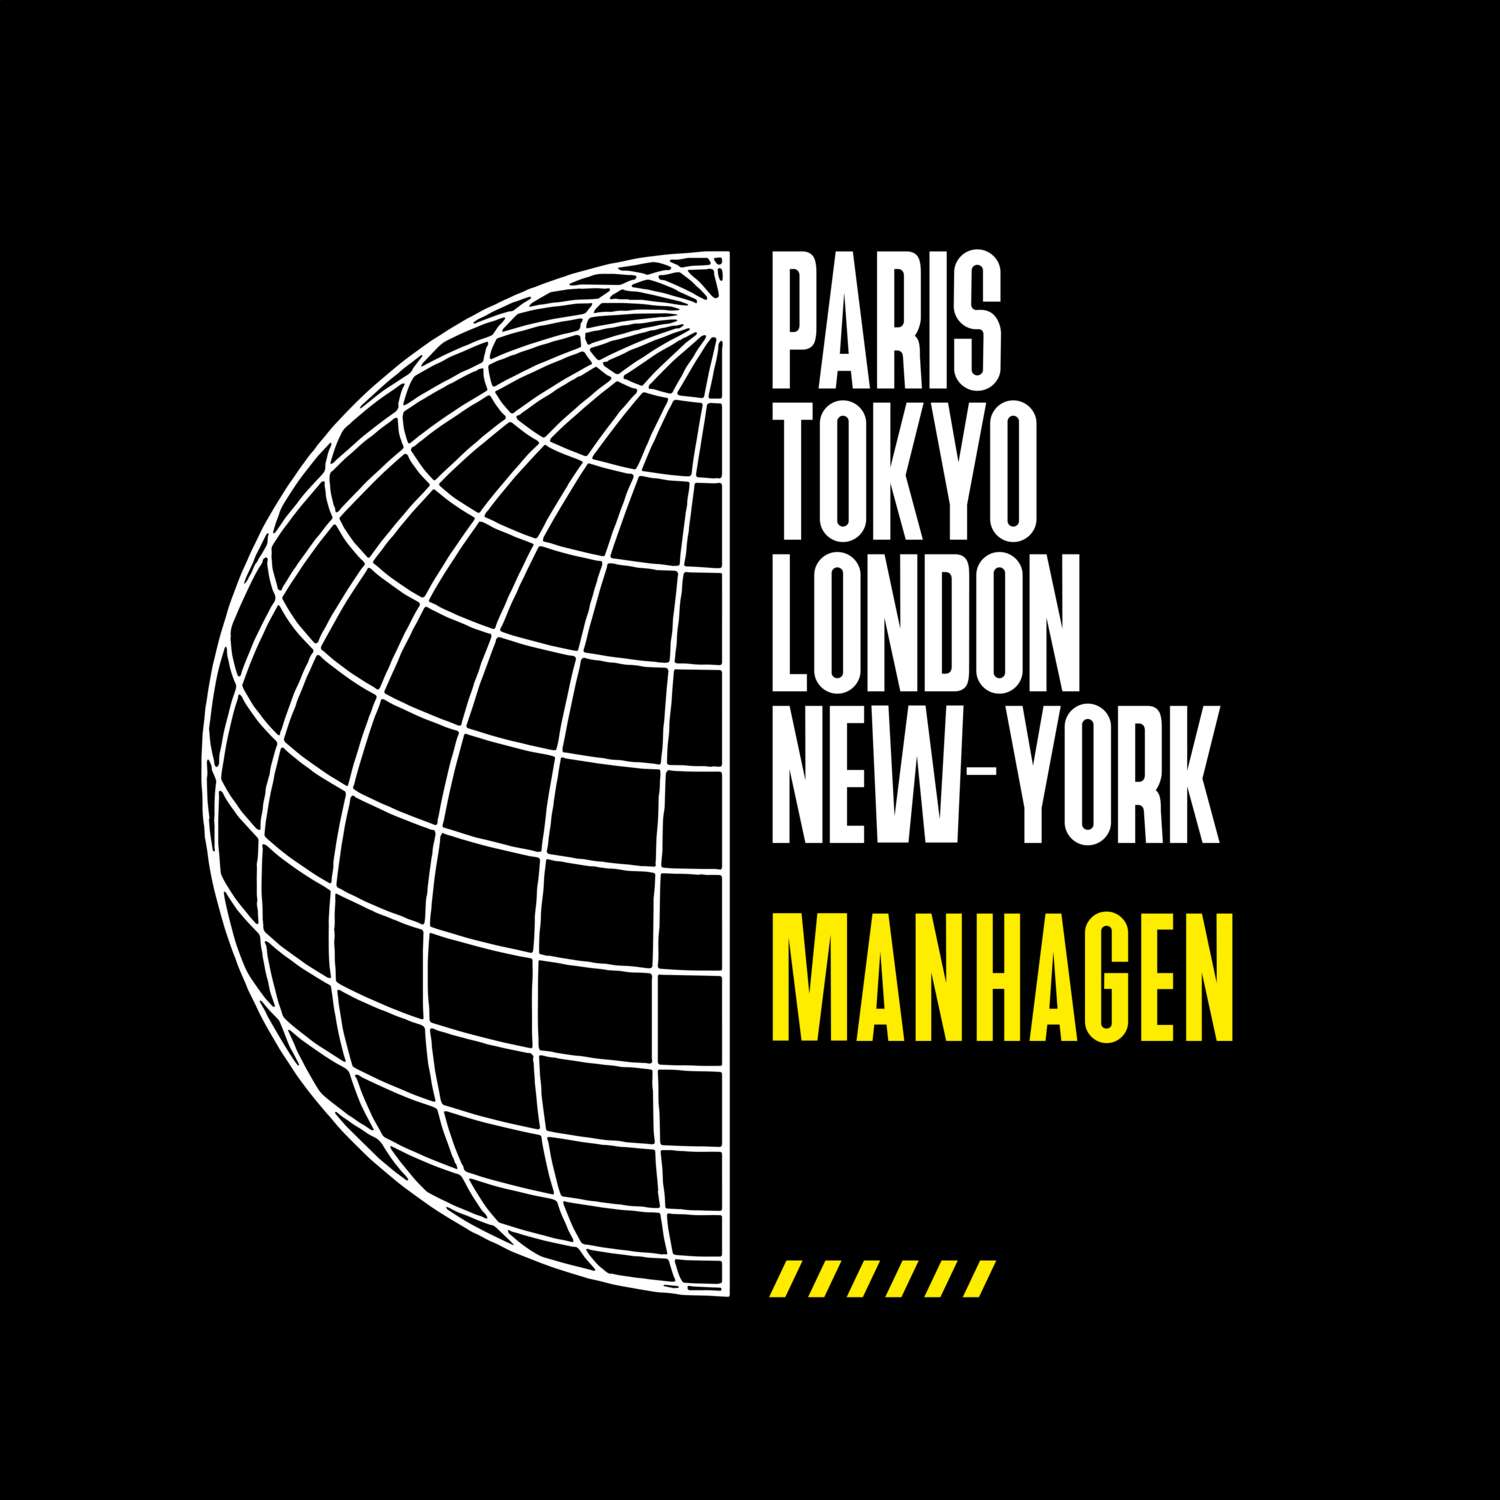 Manhagen T-Shirt »Paris Tokyo London«